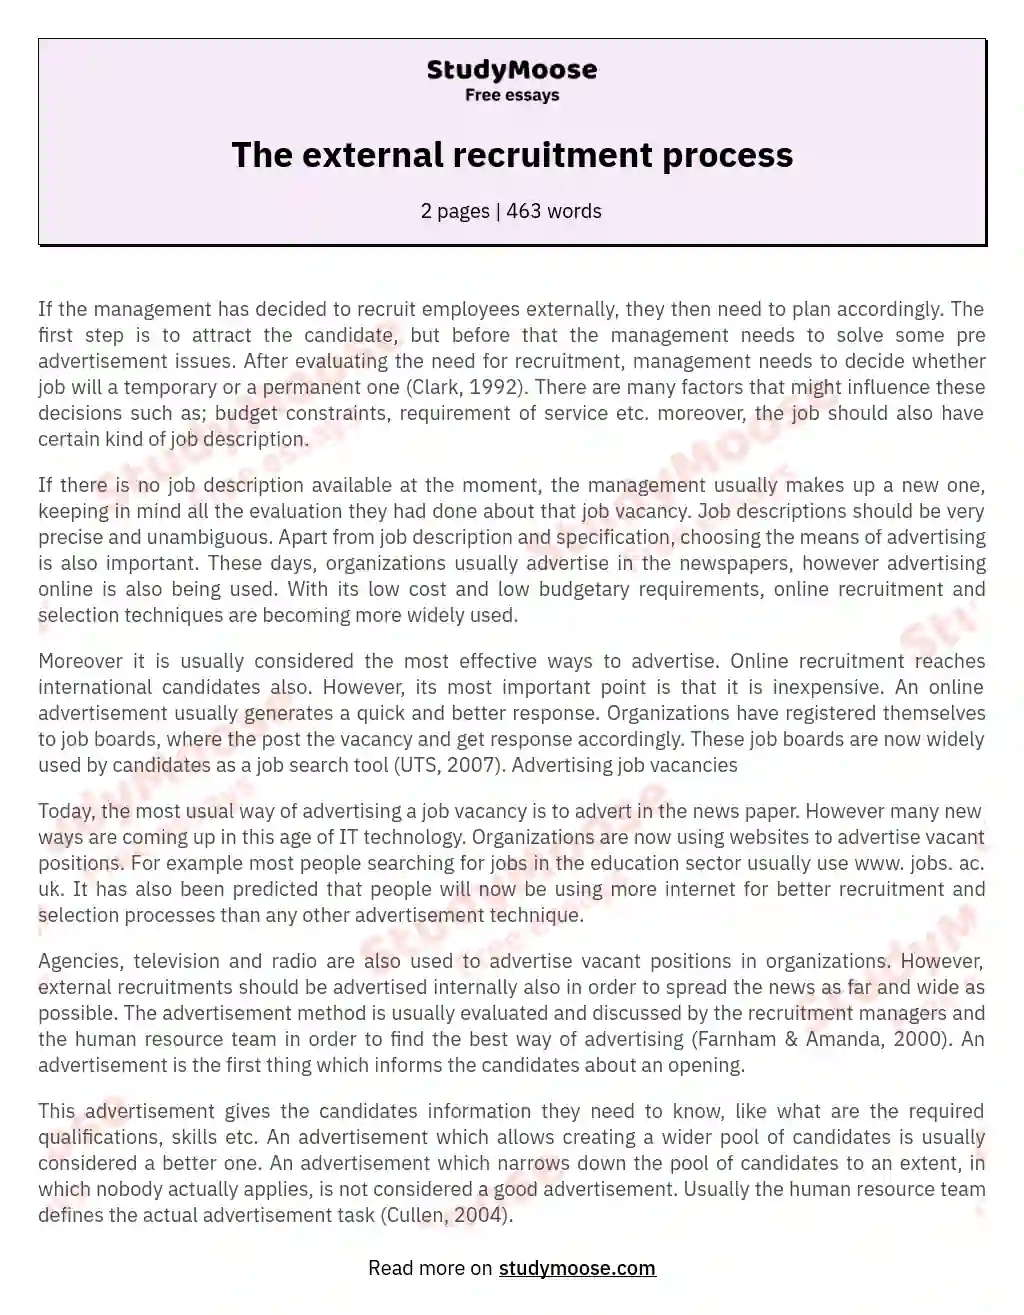 The external recruitment process essay